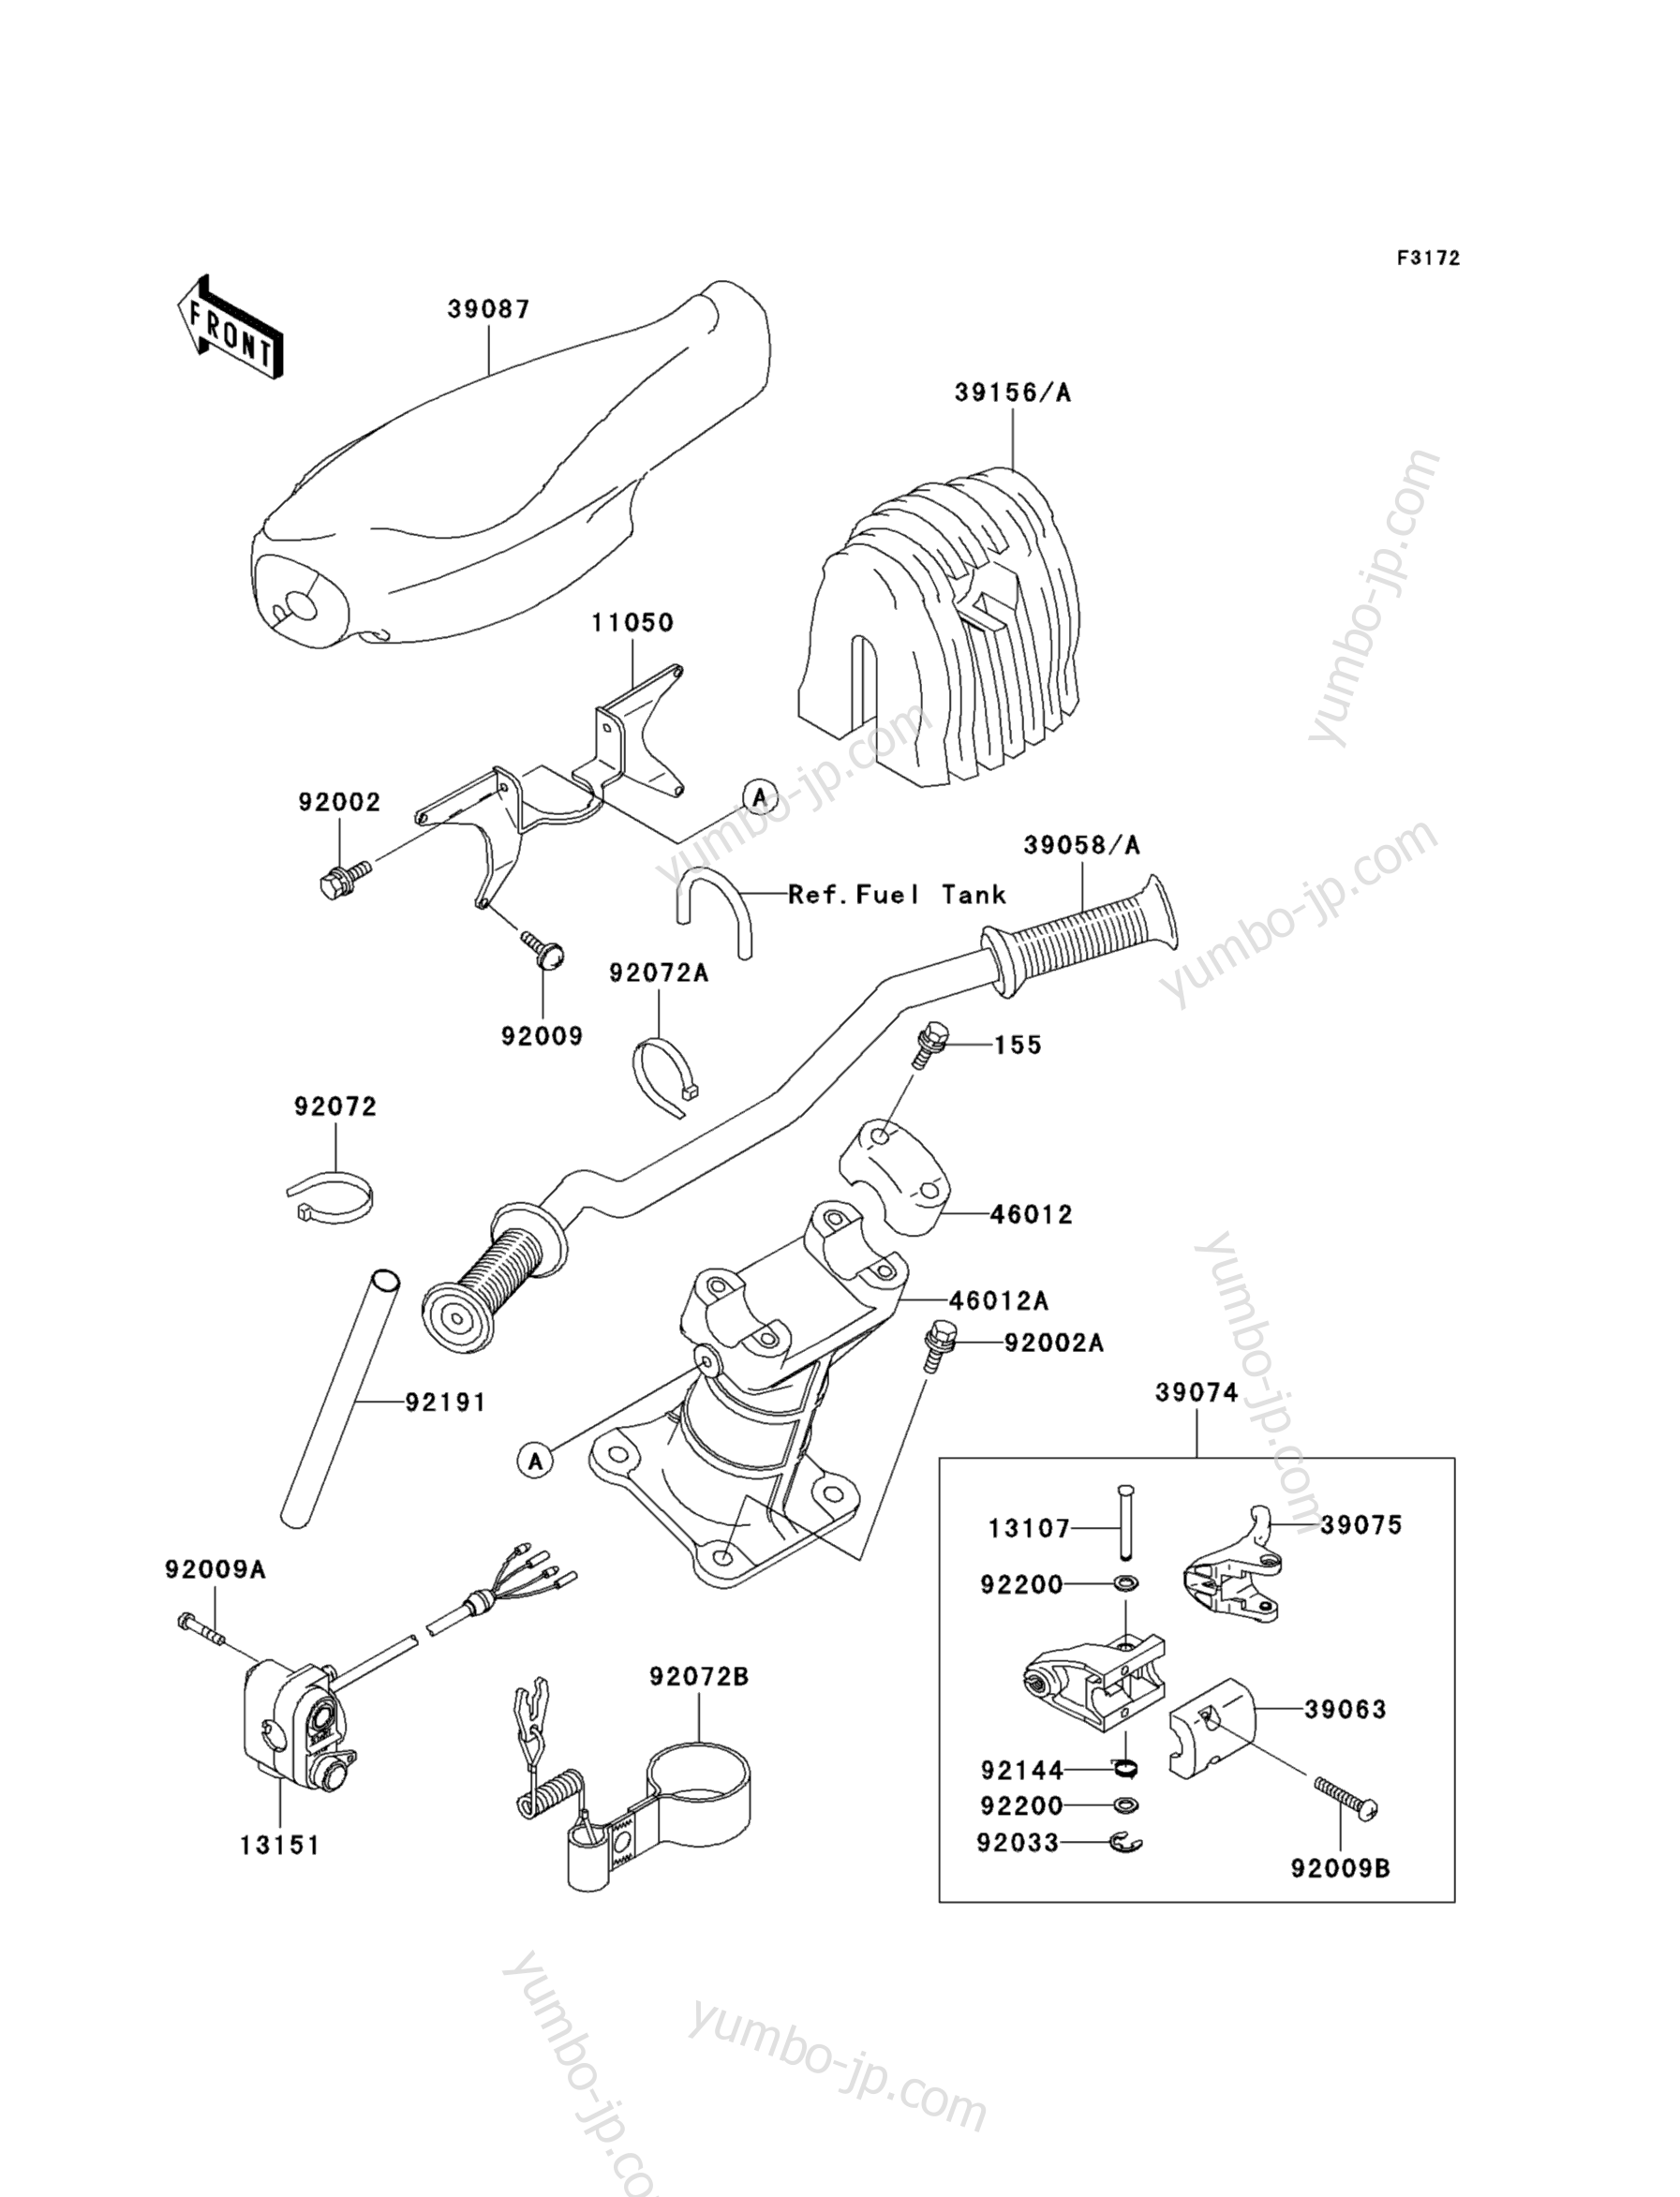 Румпель (рукоятка управления) для гидроциклов KAWASAKI JET SKI 1100 STX D.I. (JT1100-F2) 2002 г.